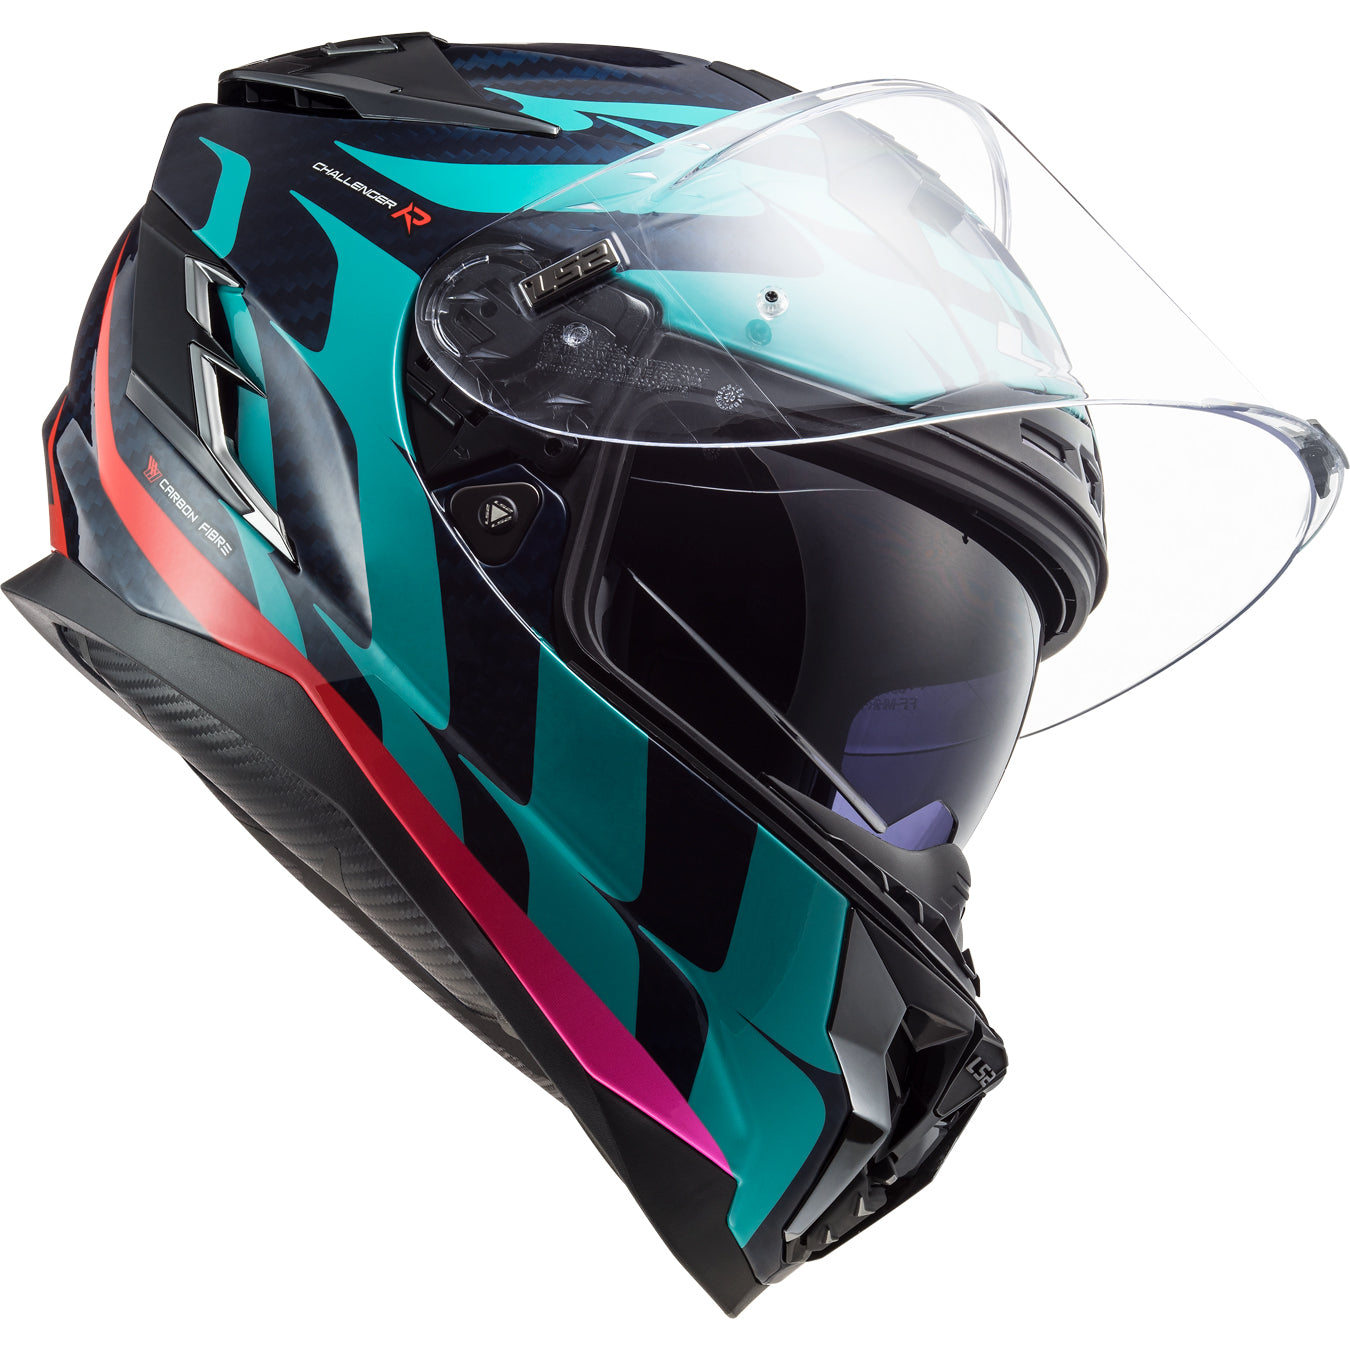 LS2 Helmets Challenger C Flames Motorcycle Full Face Helmet